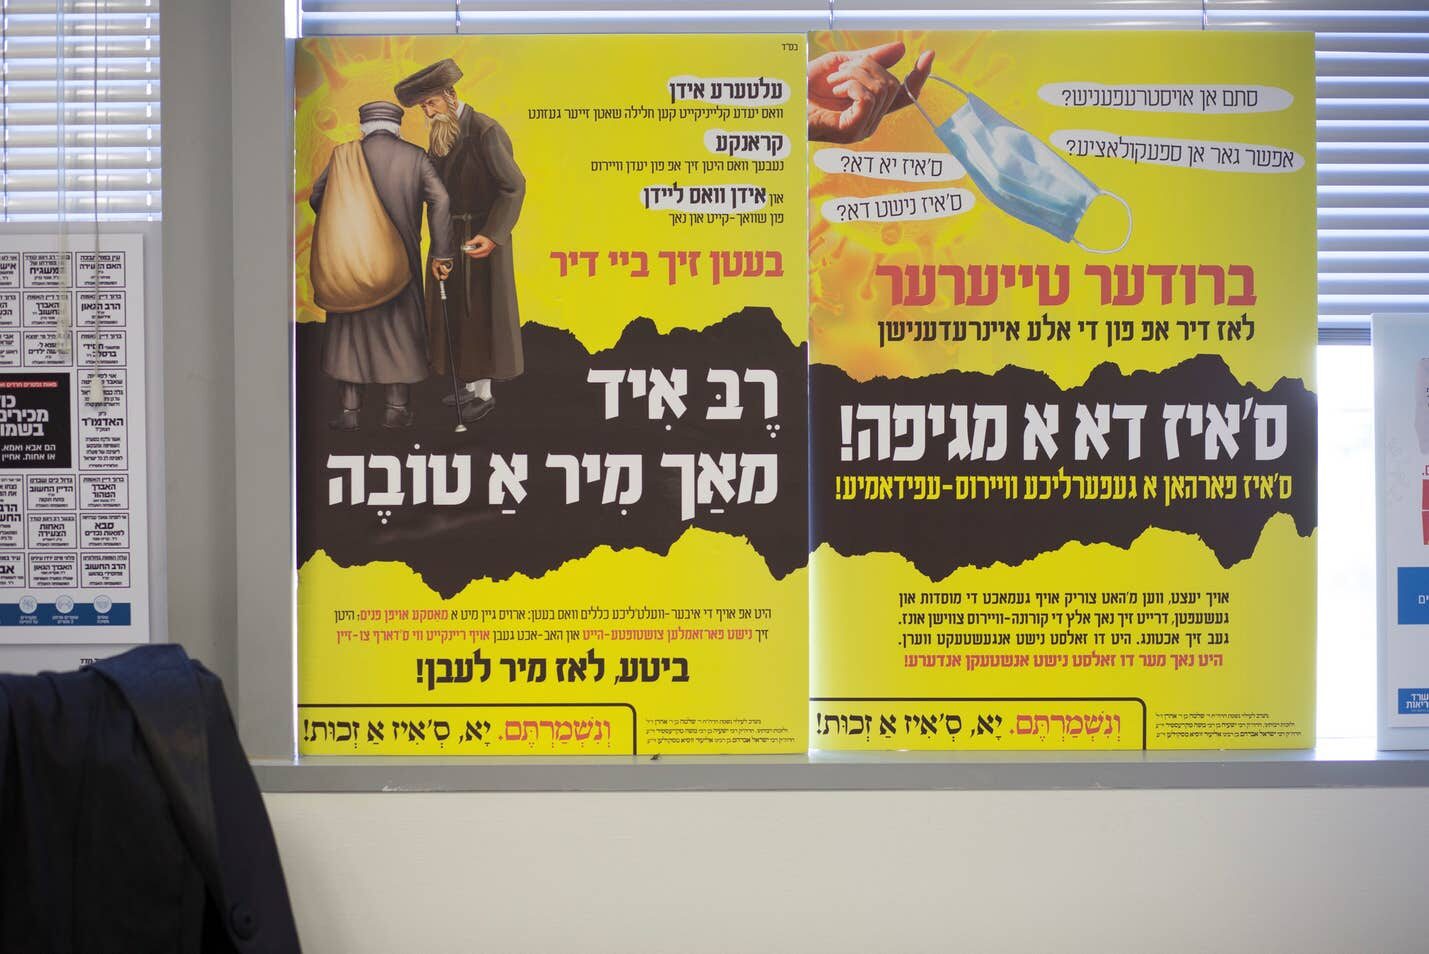 Yiddish-language posters